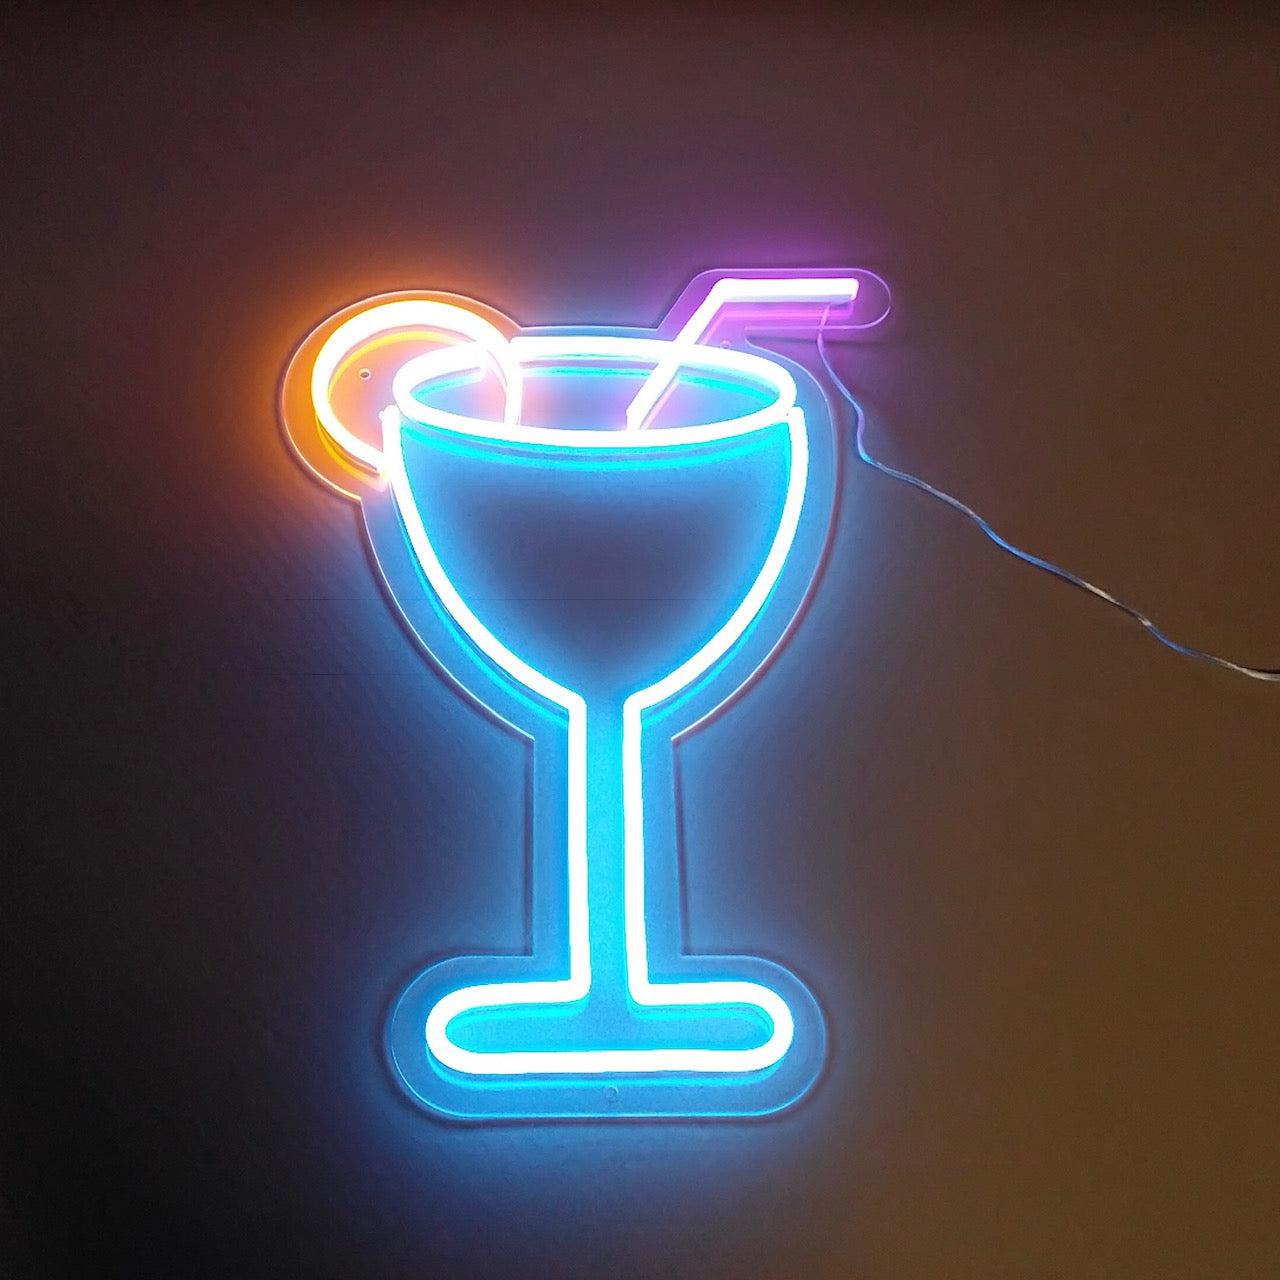 Skap en livlig stemning med vårt led neonskilt 'cocktails'. Dette stilige skiltet er utformet for å gi en moderne og innbydende følelse til enhver innendørs setting. Med sin isblå, hot pink og gullgule fargekombinasjon, vil dette skiltet garantert fange oppmerksomheten og skape den rette atmosfæren for avslapping og sosialt samvær.